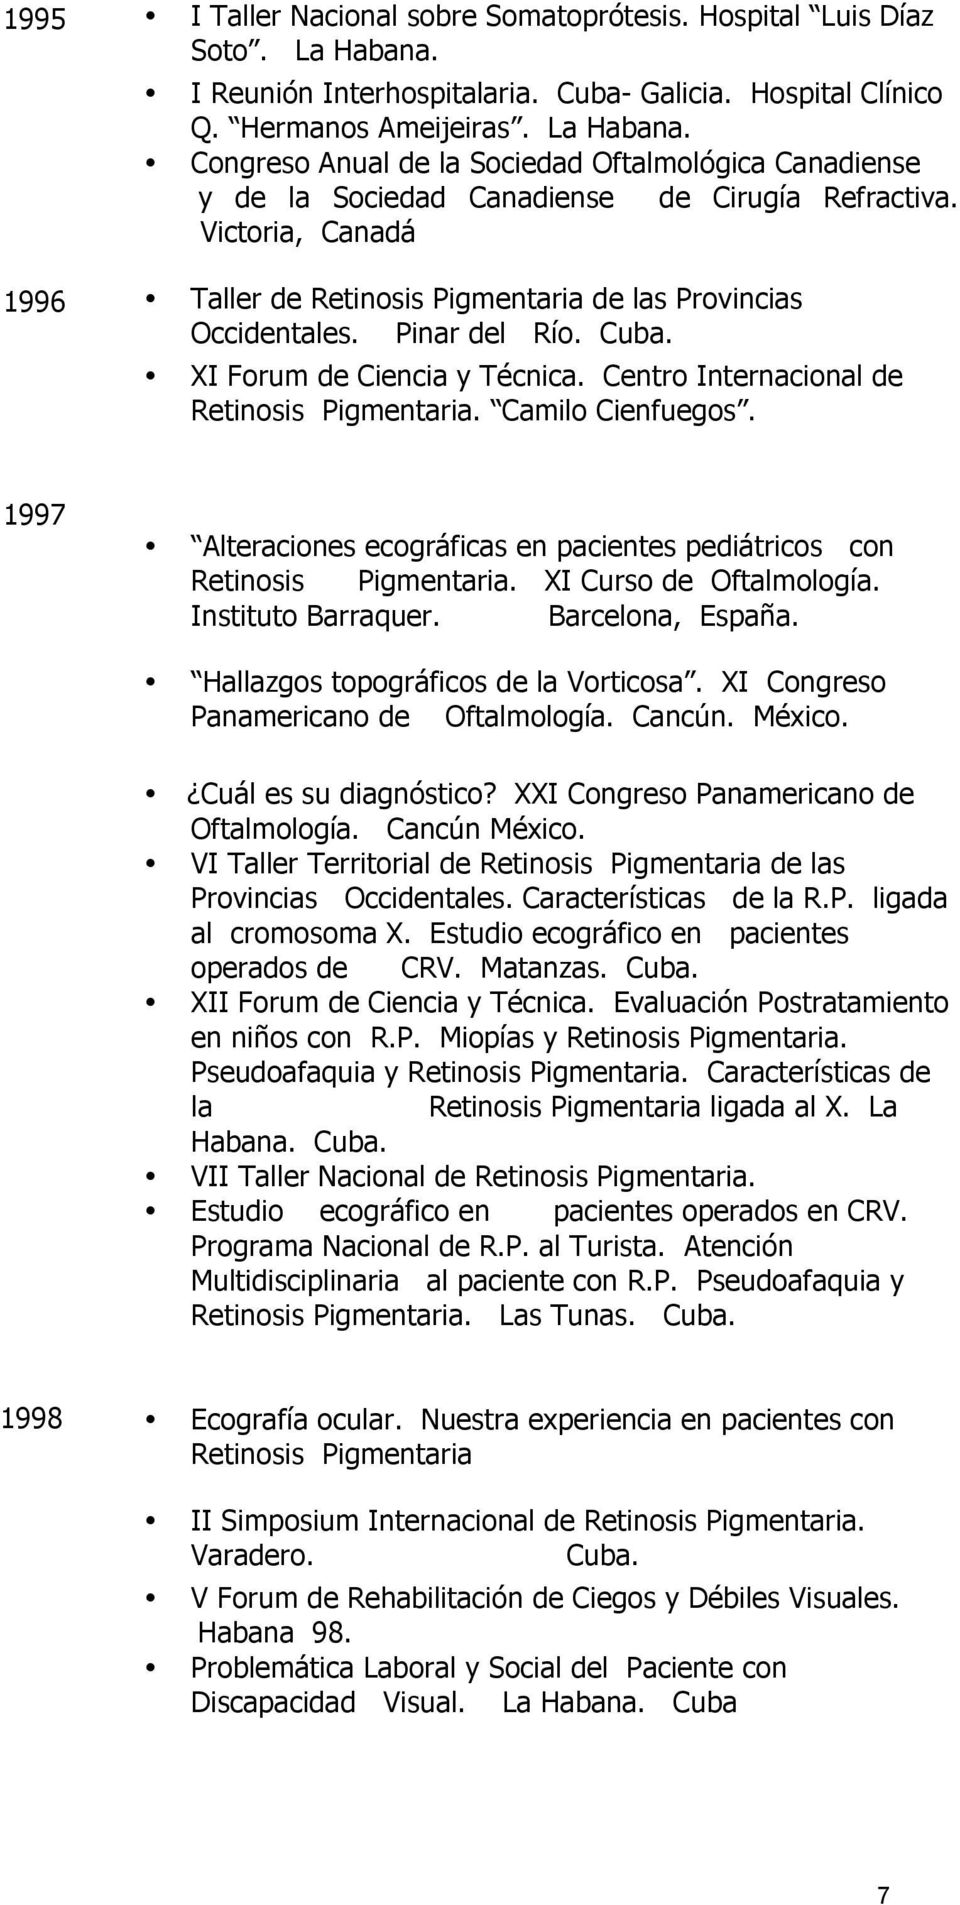 Camilo Cienfuegos. 1997 Alteraciones ecográficas en pacientes pediátricos con Retinosis Pigmentaria. XI Curso de Oftalmología. Instituto Barraquer. Barcelona, España.